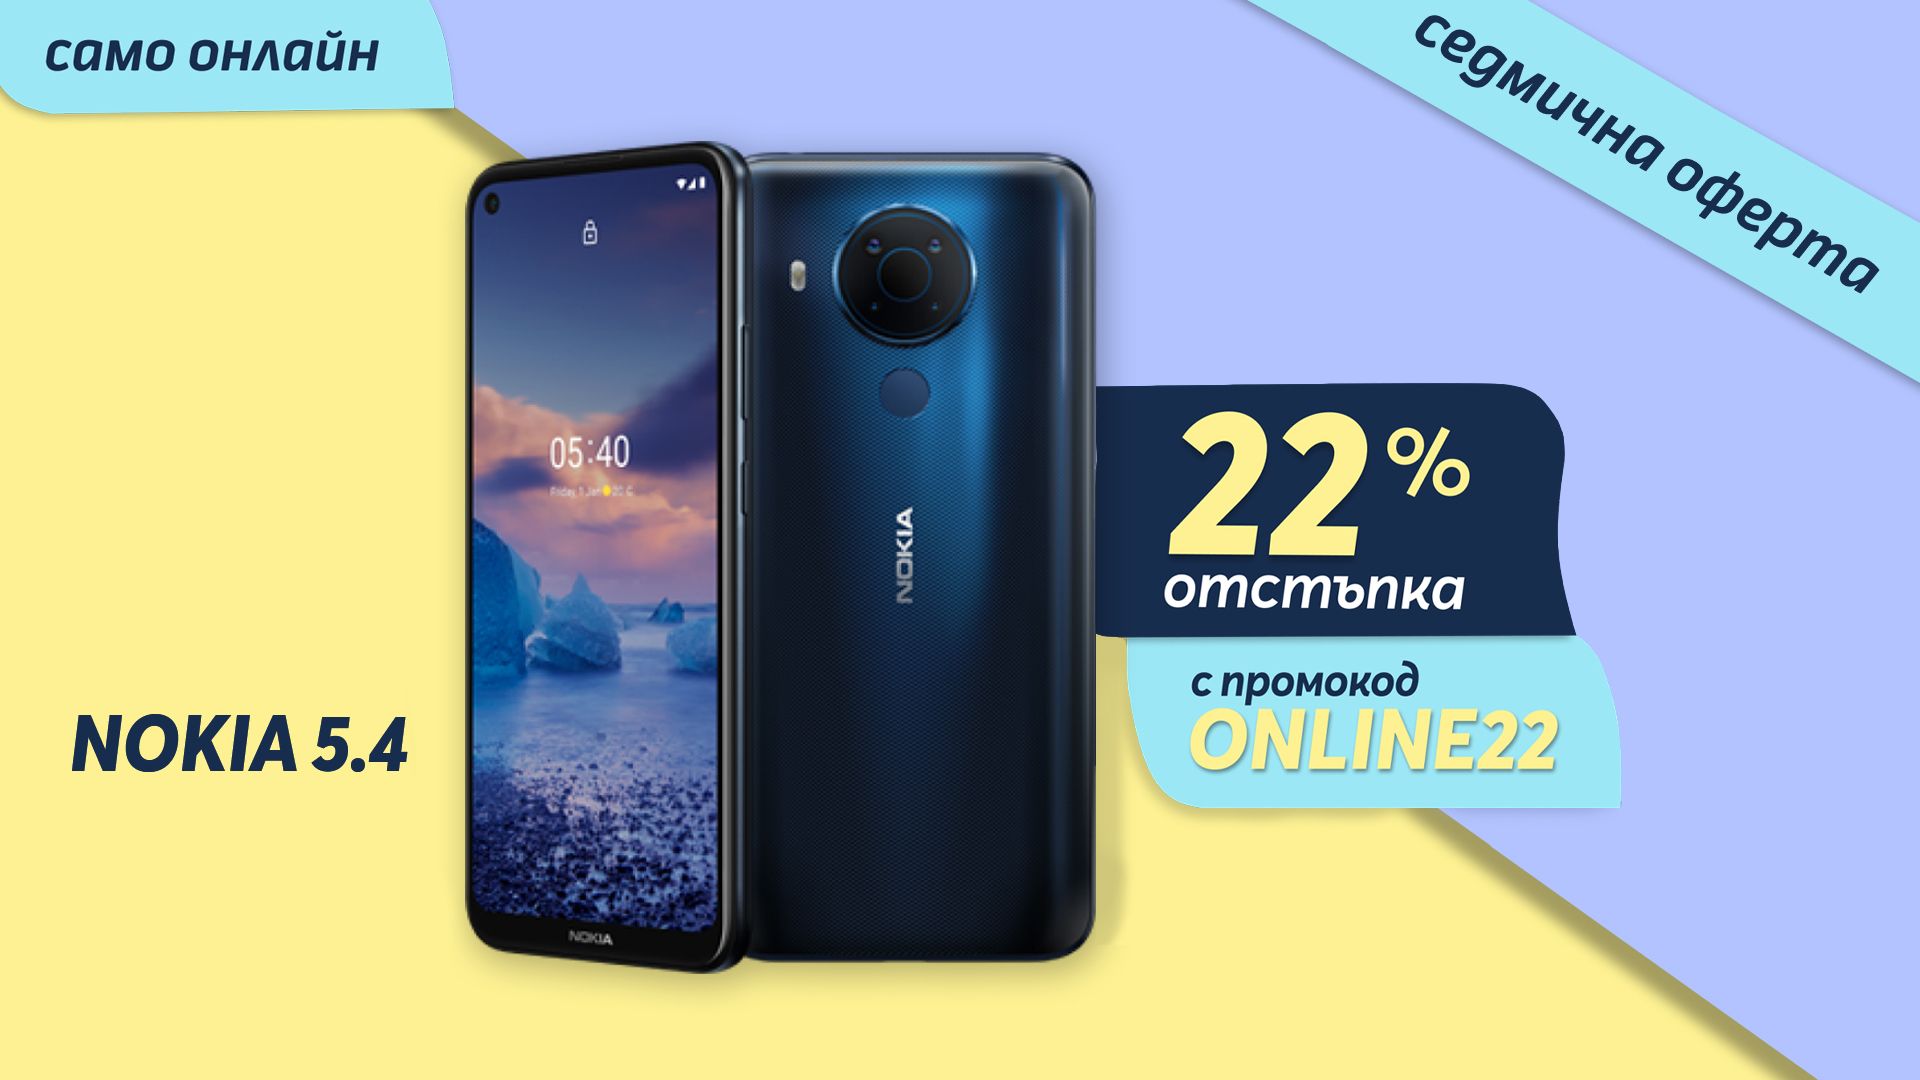 Само онлайн от Теленор тази седмица: смартфон Nokia 5.4 с 22% отстъпка от цената в брой 